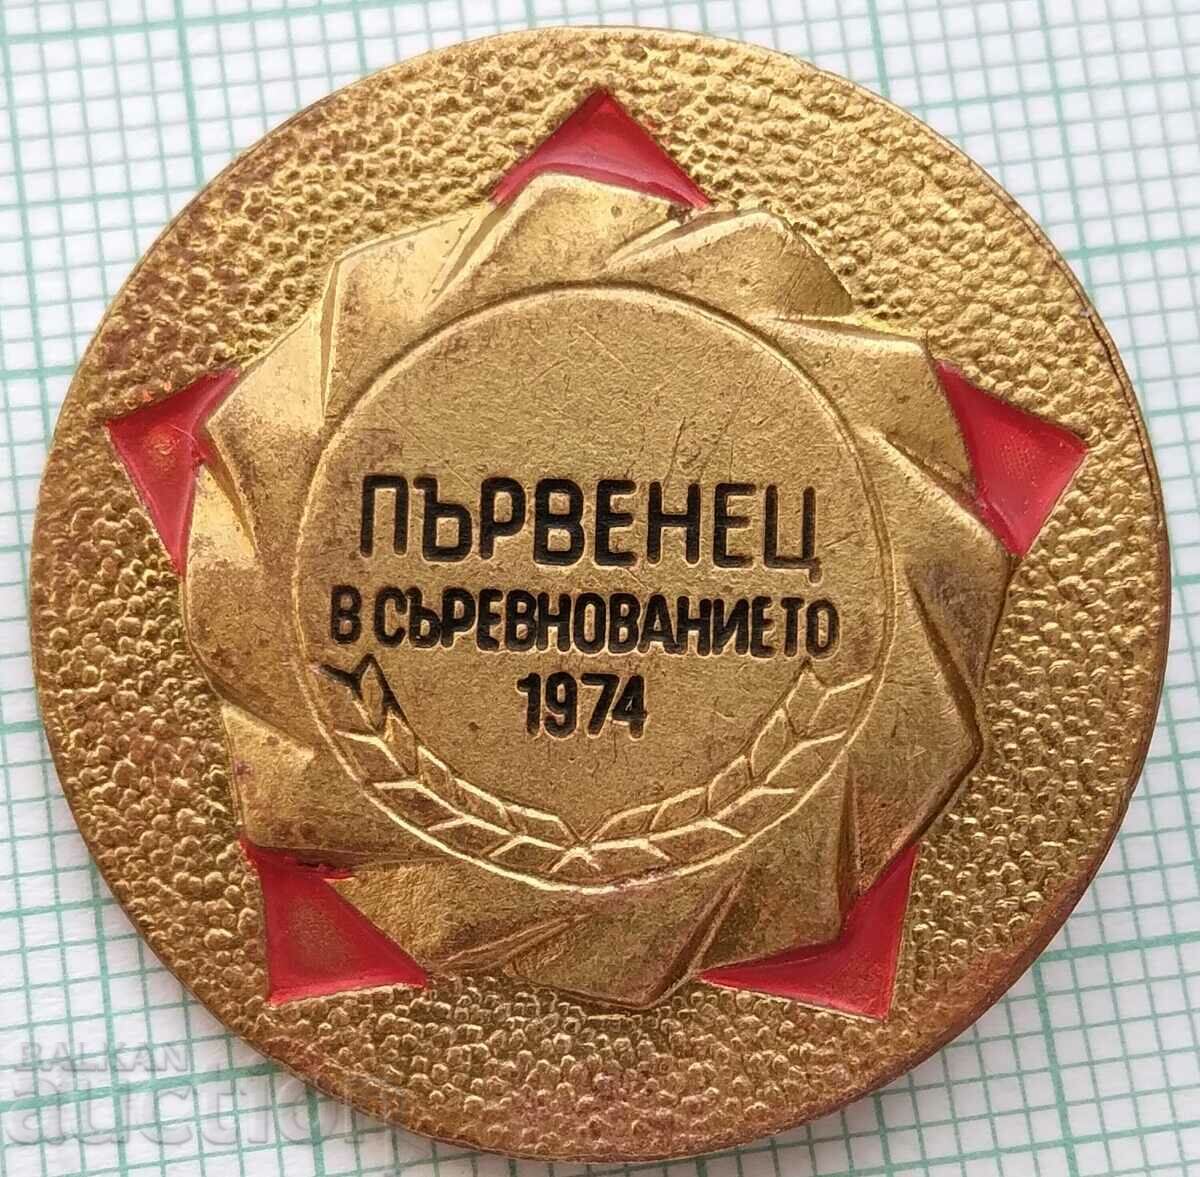 Σήμα 15367 - Νικητής στο διαγωνισμό του 1974.